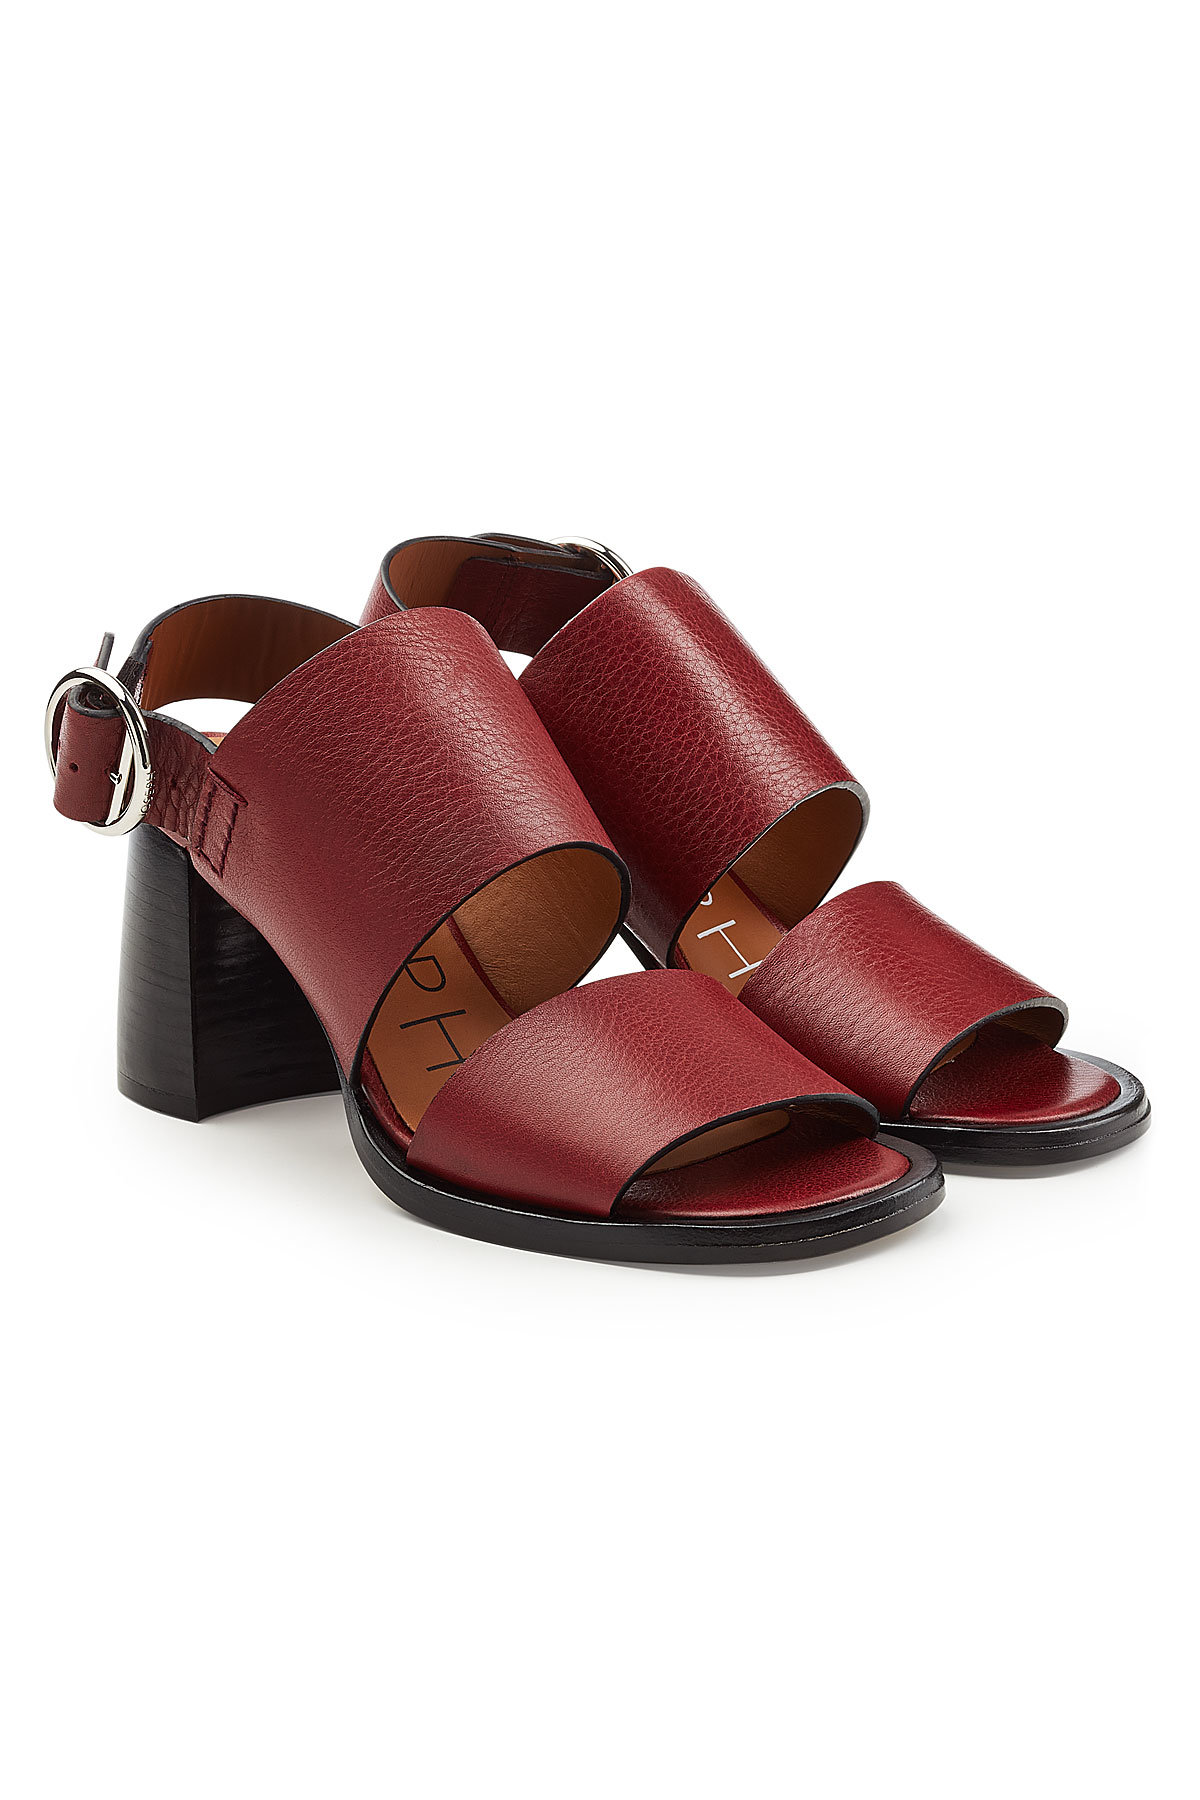 Joseph - Stein Leather Sandals